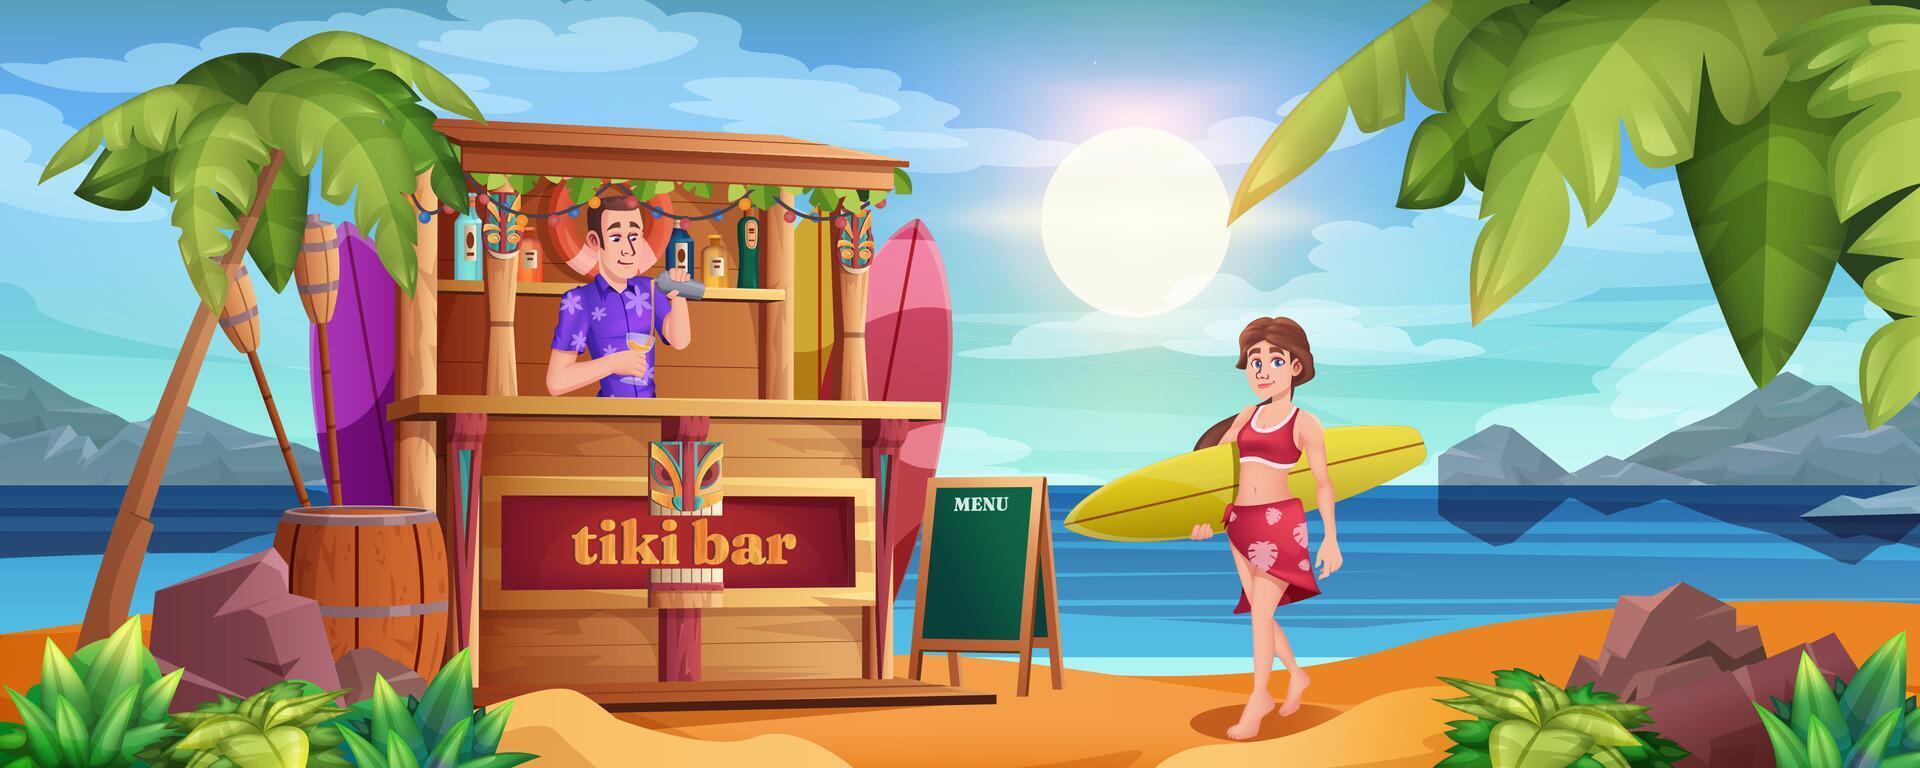 dibujos animados verano playa con tiki bar y barman. sonriente niña en verano vestir con tabla de surf a Oceano arenoso línea costera con palma arboles barman con cócteles y de madera choza en mar. vector